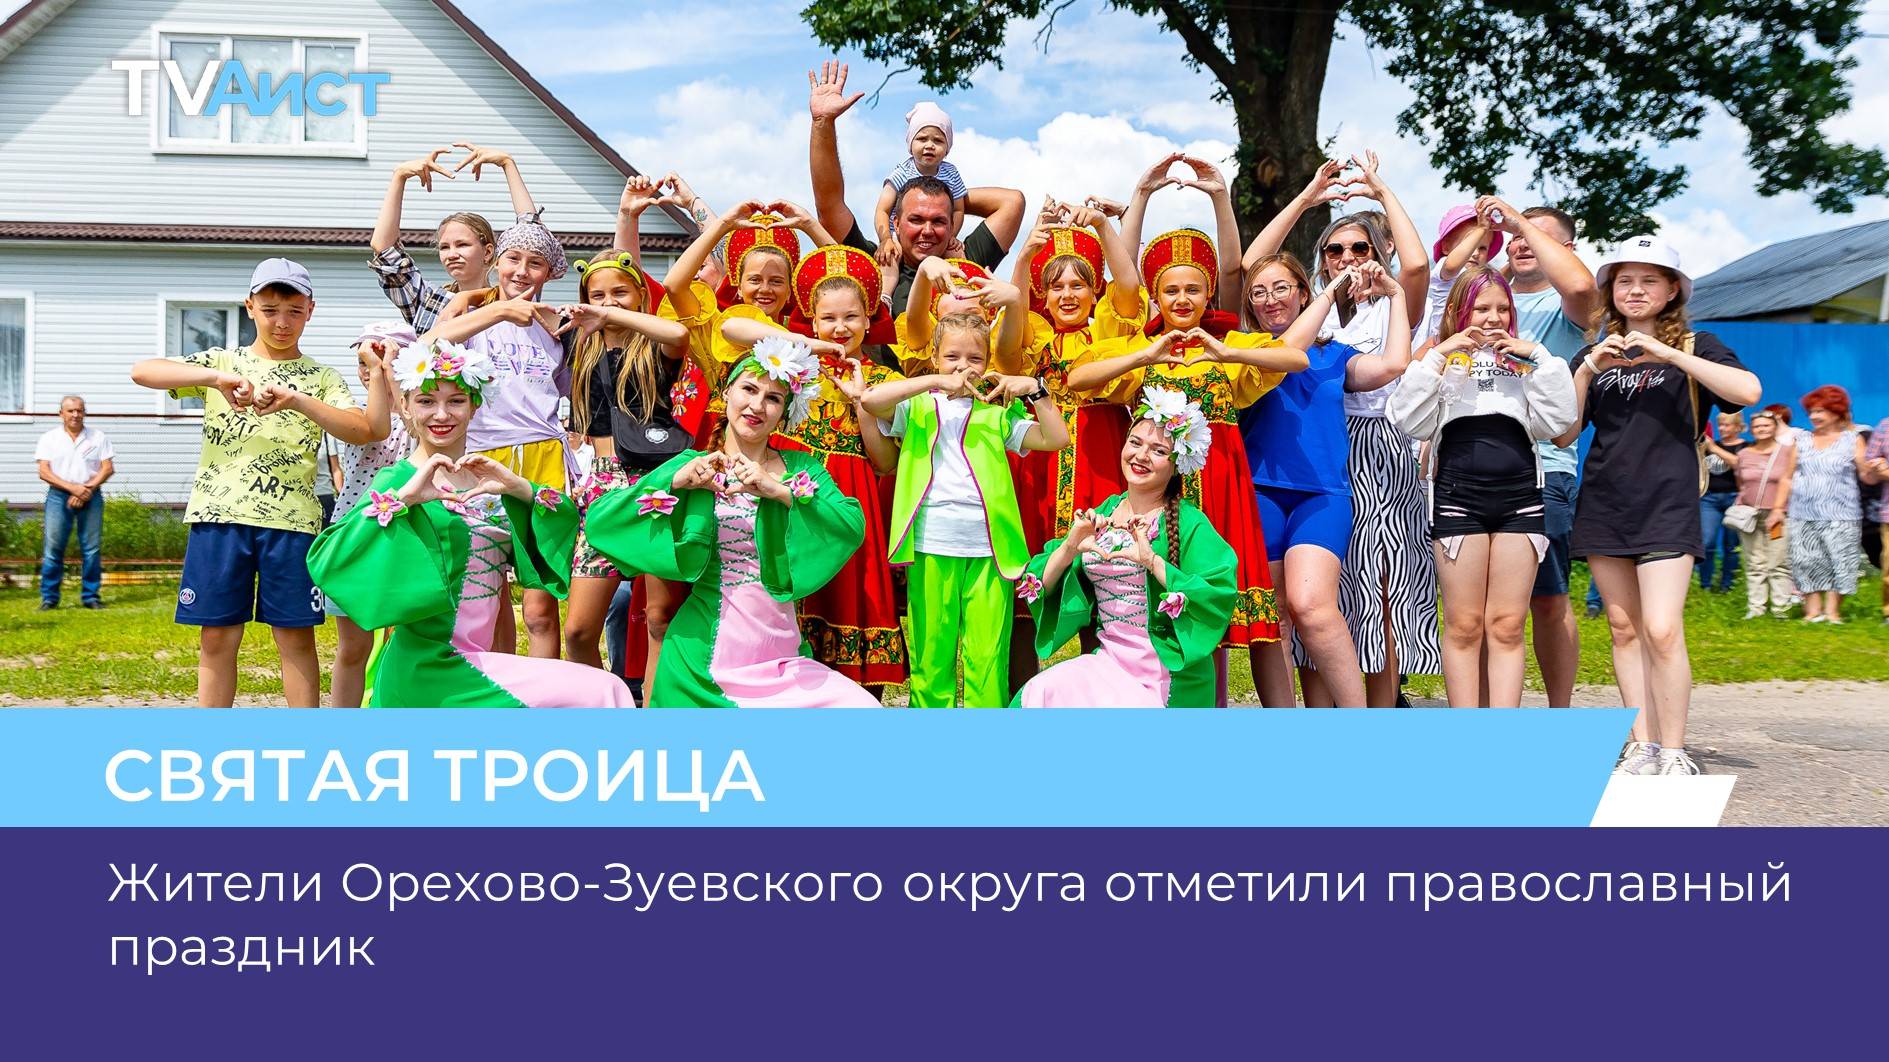 Жители Орехово-Зуевского округа отметили православный праздник